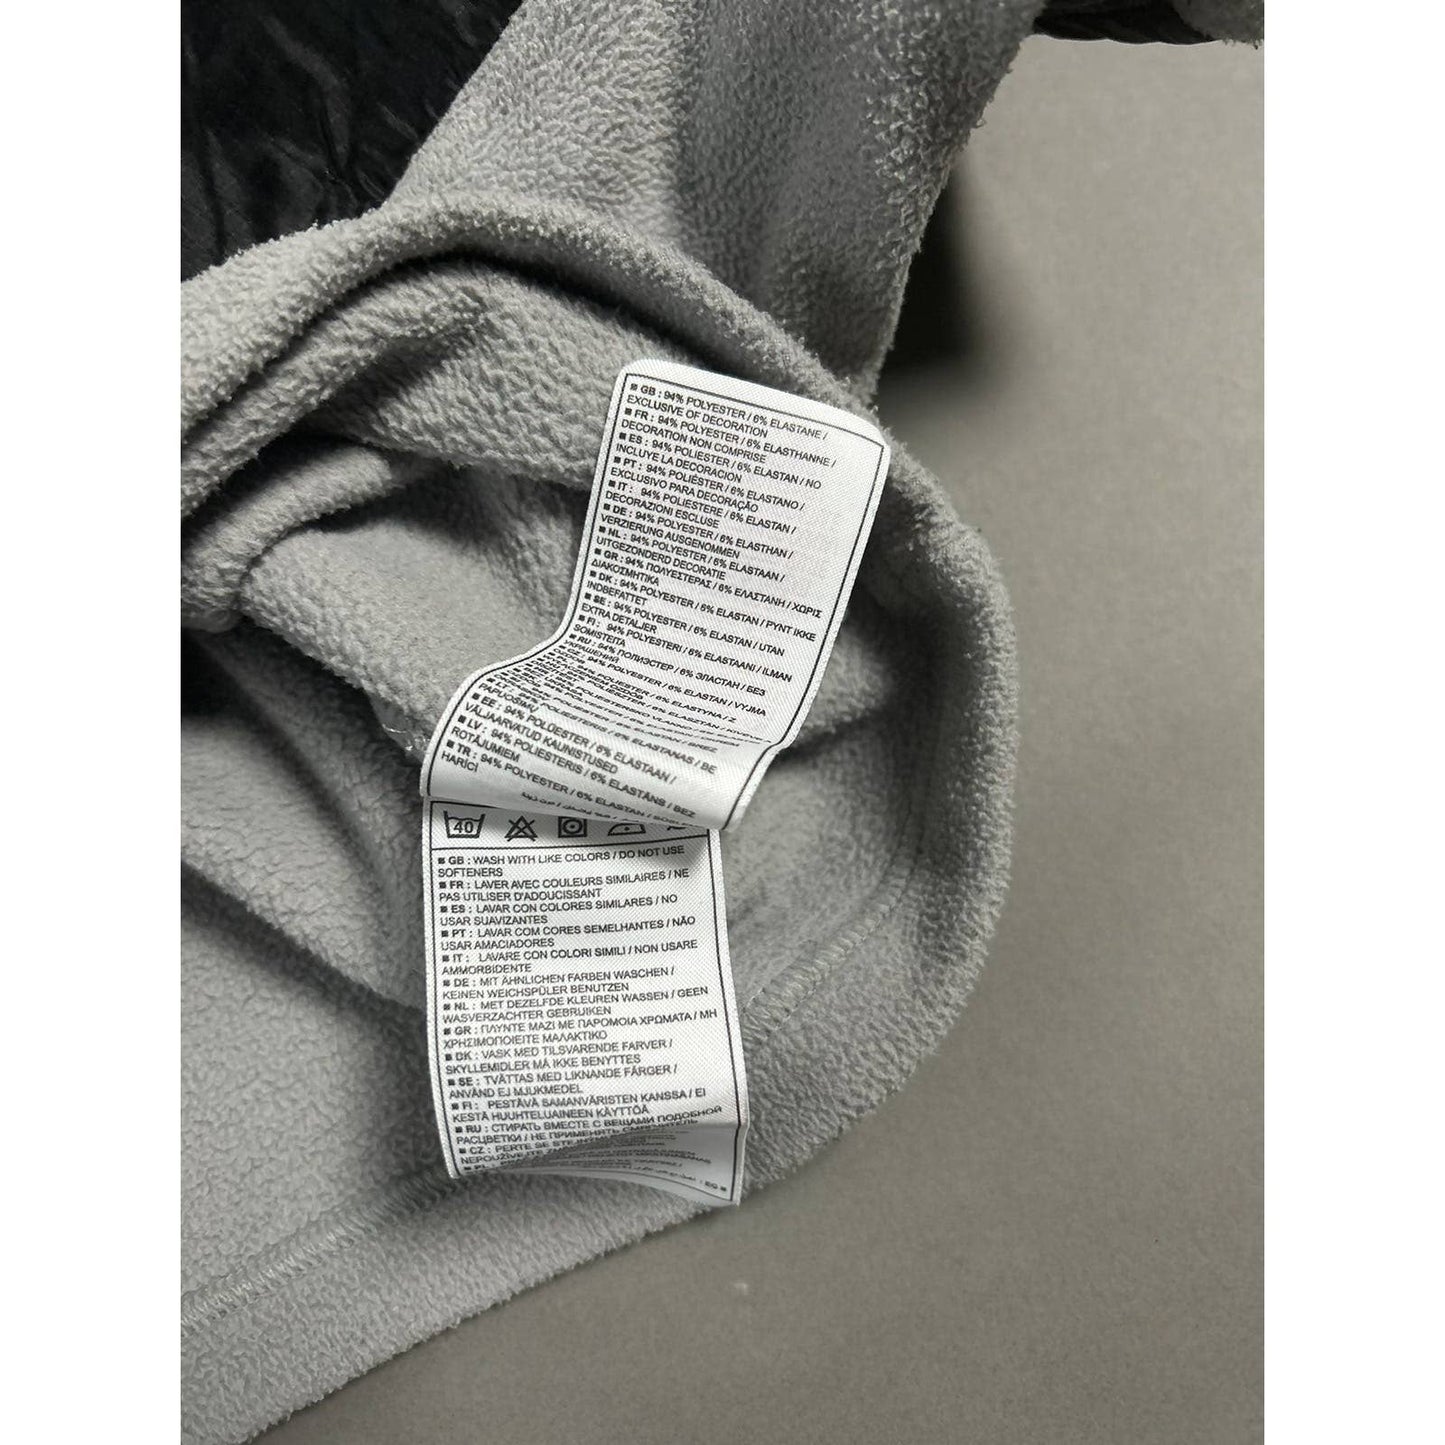 Nike ACG vintage fleece nylon patches grey